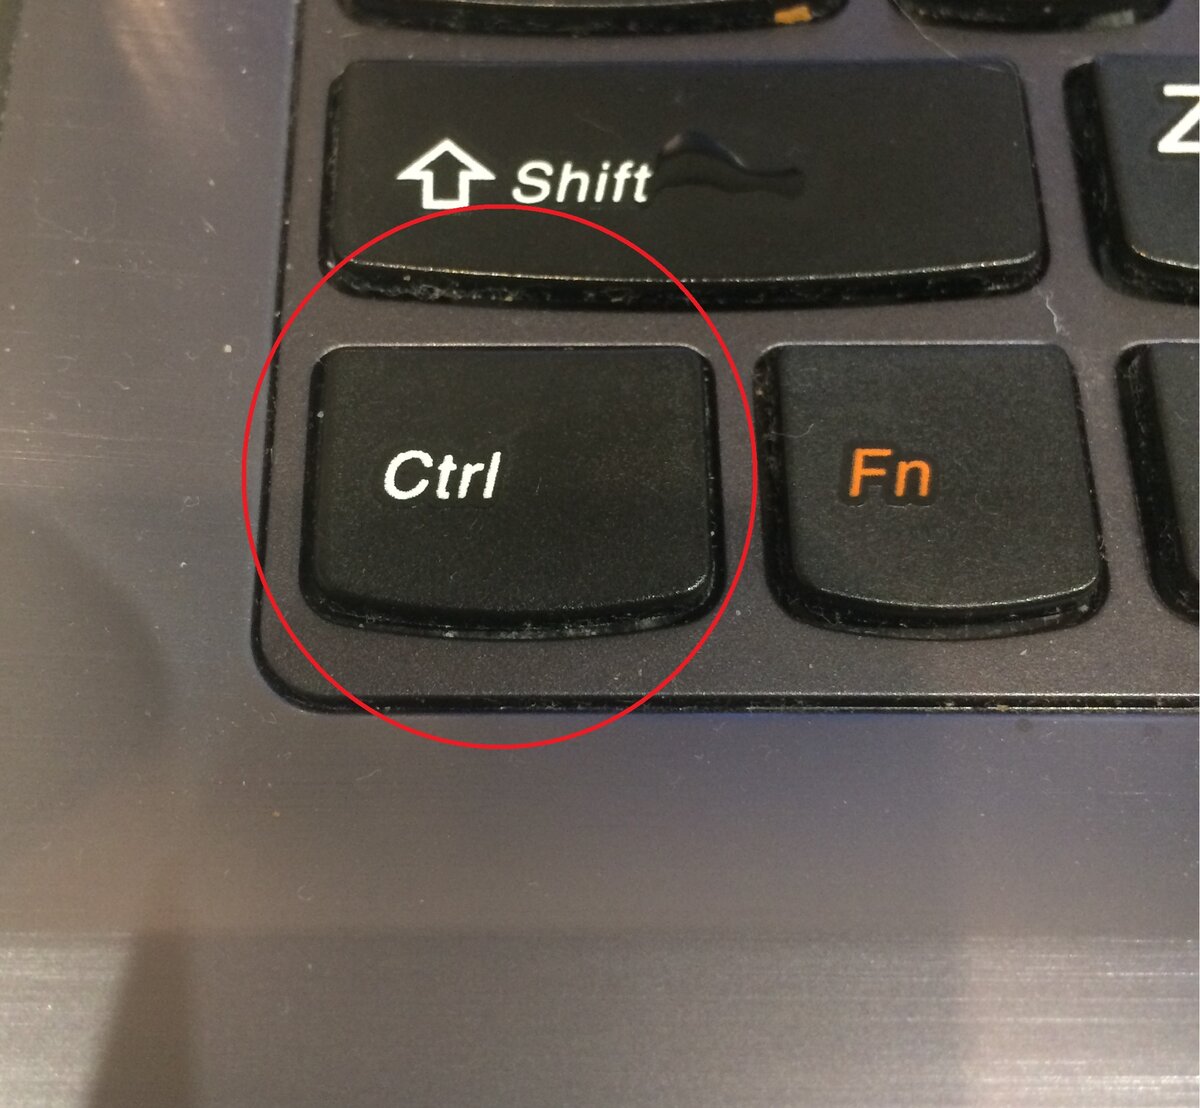 Нажми ctrl f. Кнопка FN+f8. Клавиша контрол шифт. Клавиша Ctrl на клавиатуре. Кнопка Ctrl на клавиатуре.